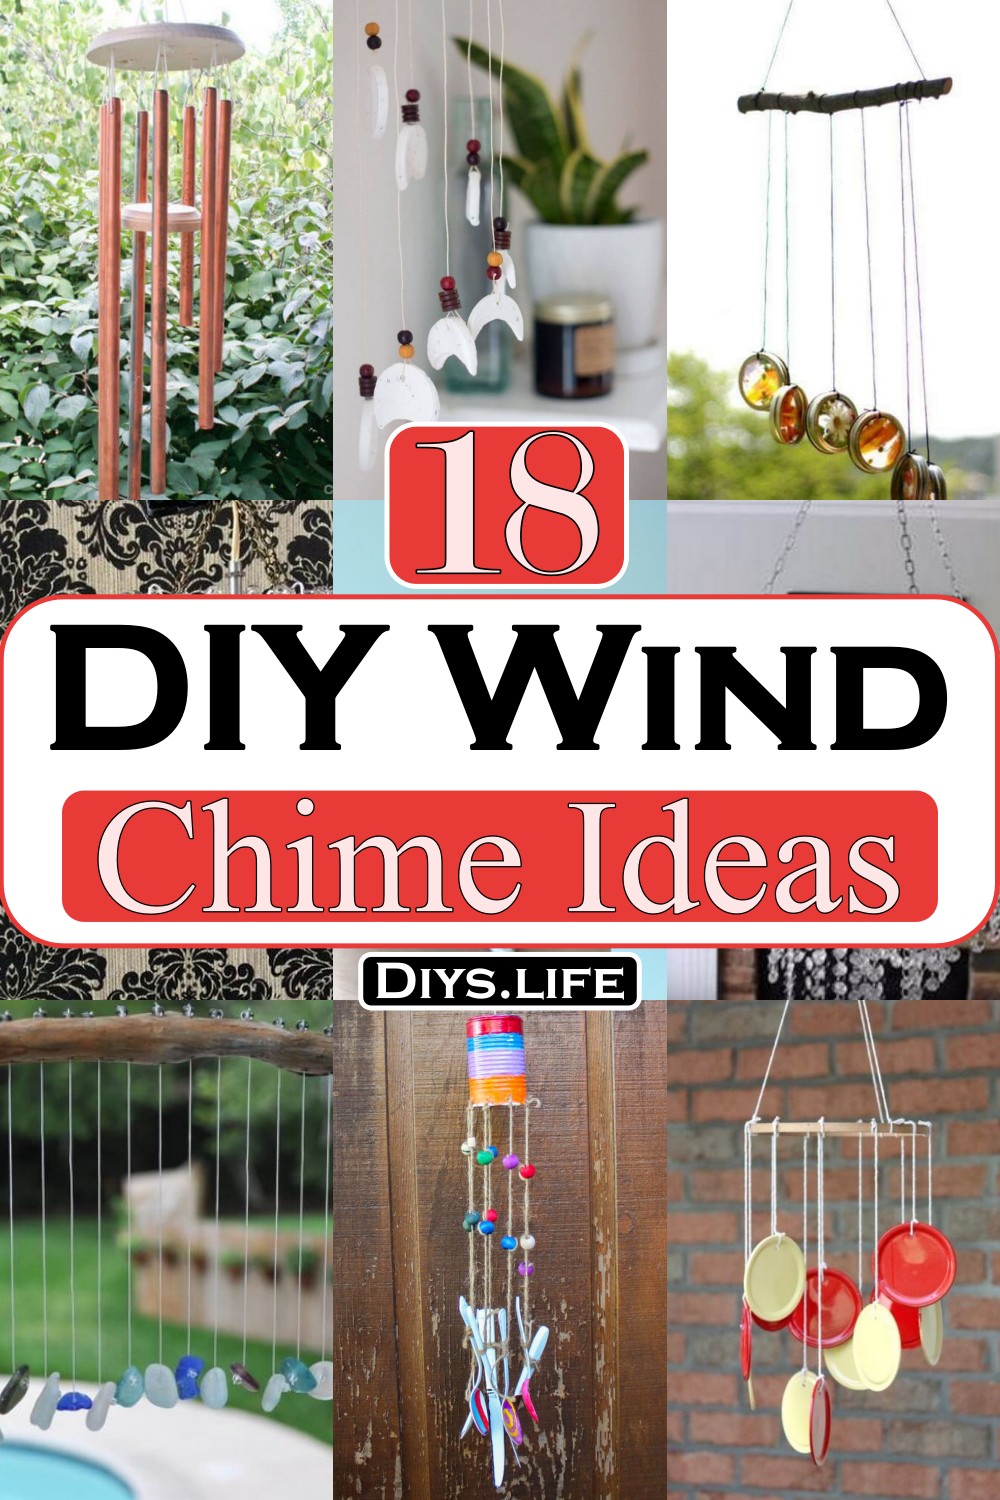 DIY Wind Chime Ideas